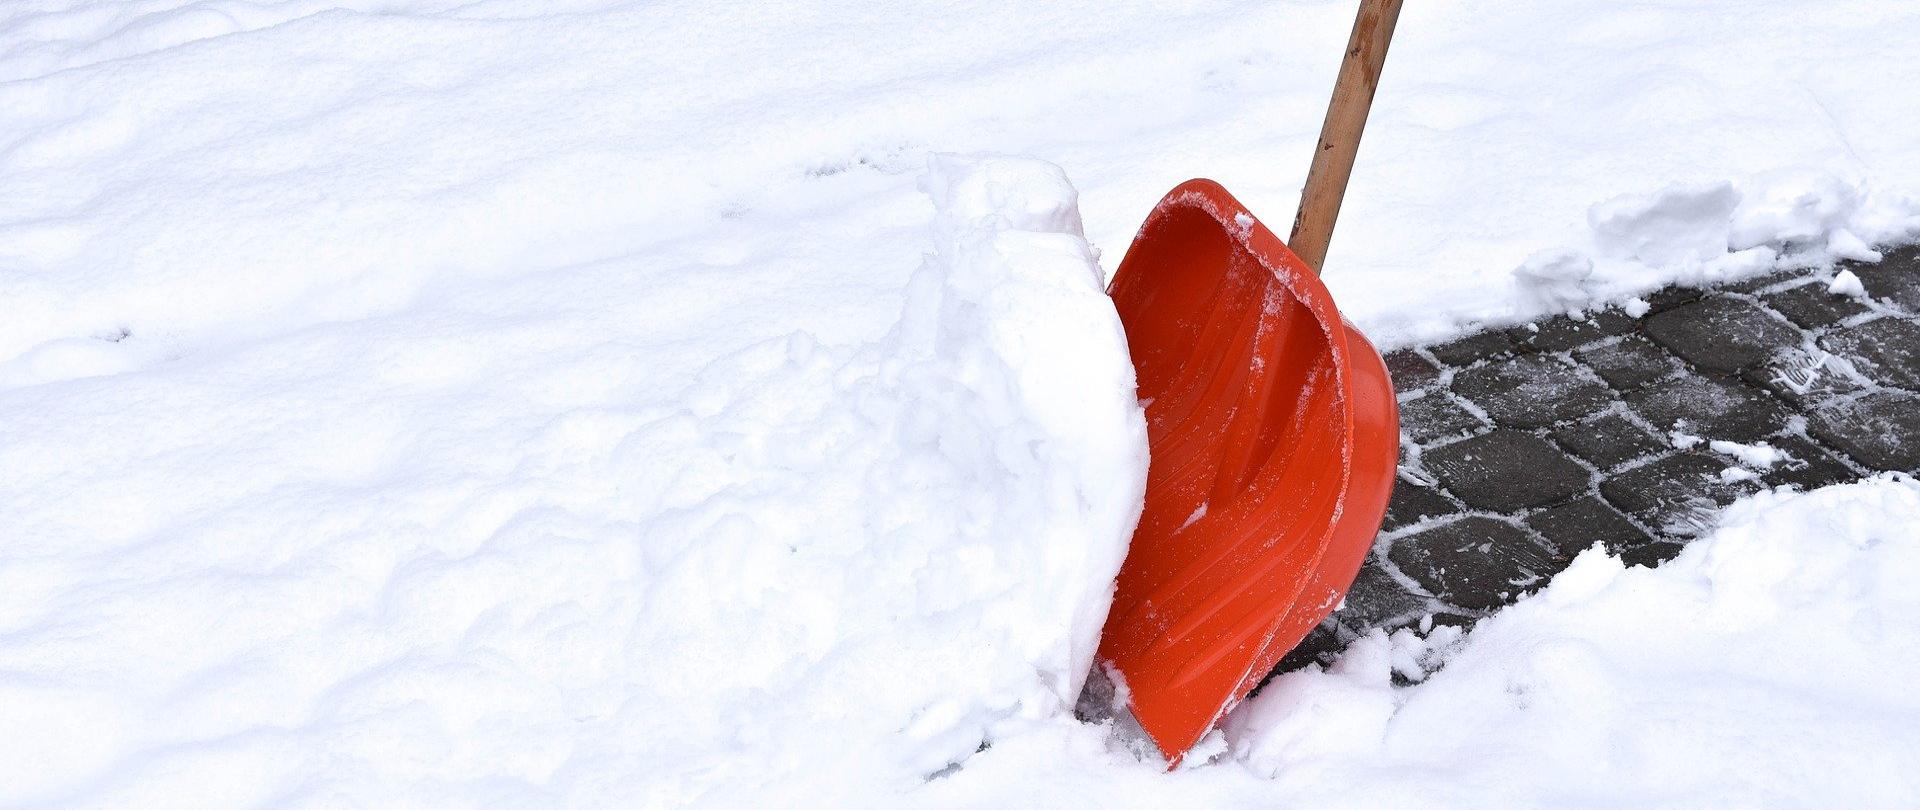 Zdjęcie łopaty do odśnieżania wbitej w śnieg na chodniku.